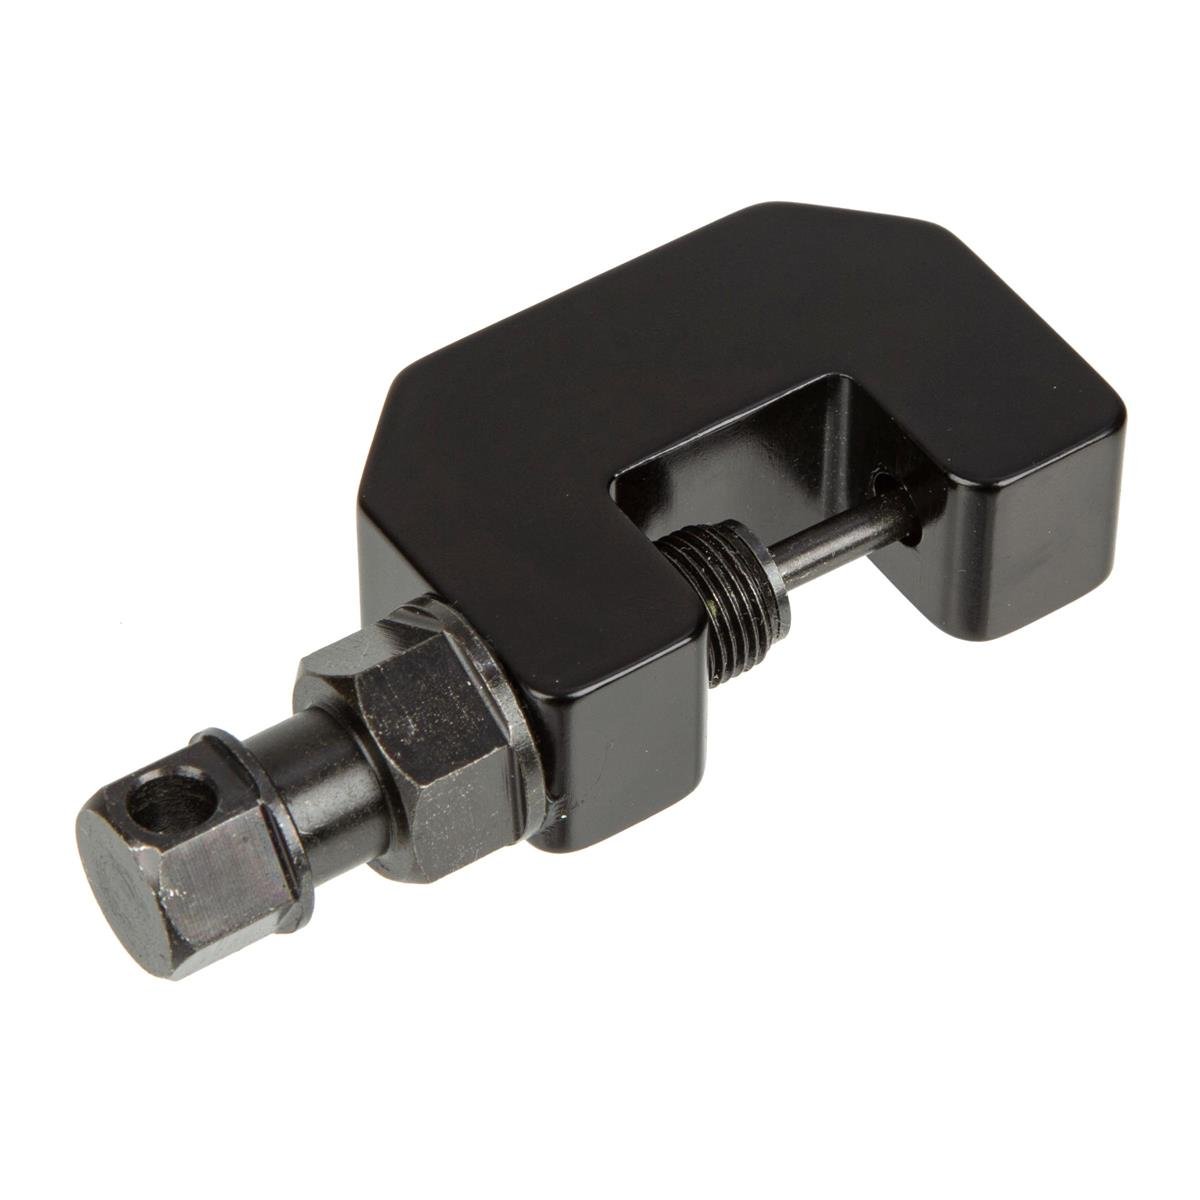 DRC Chain Cutter Mini Black